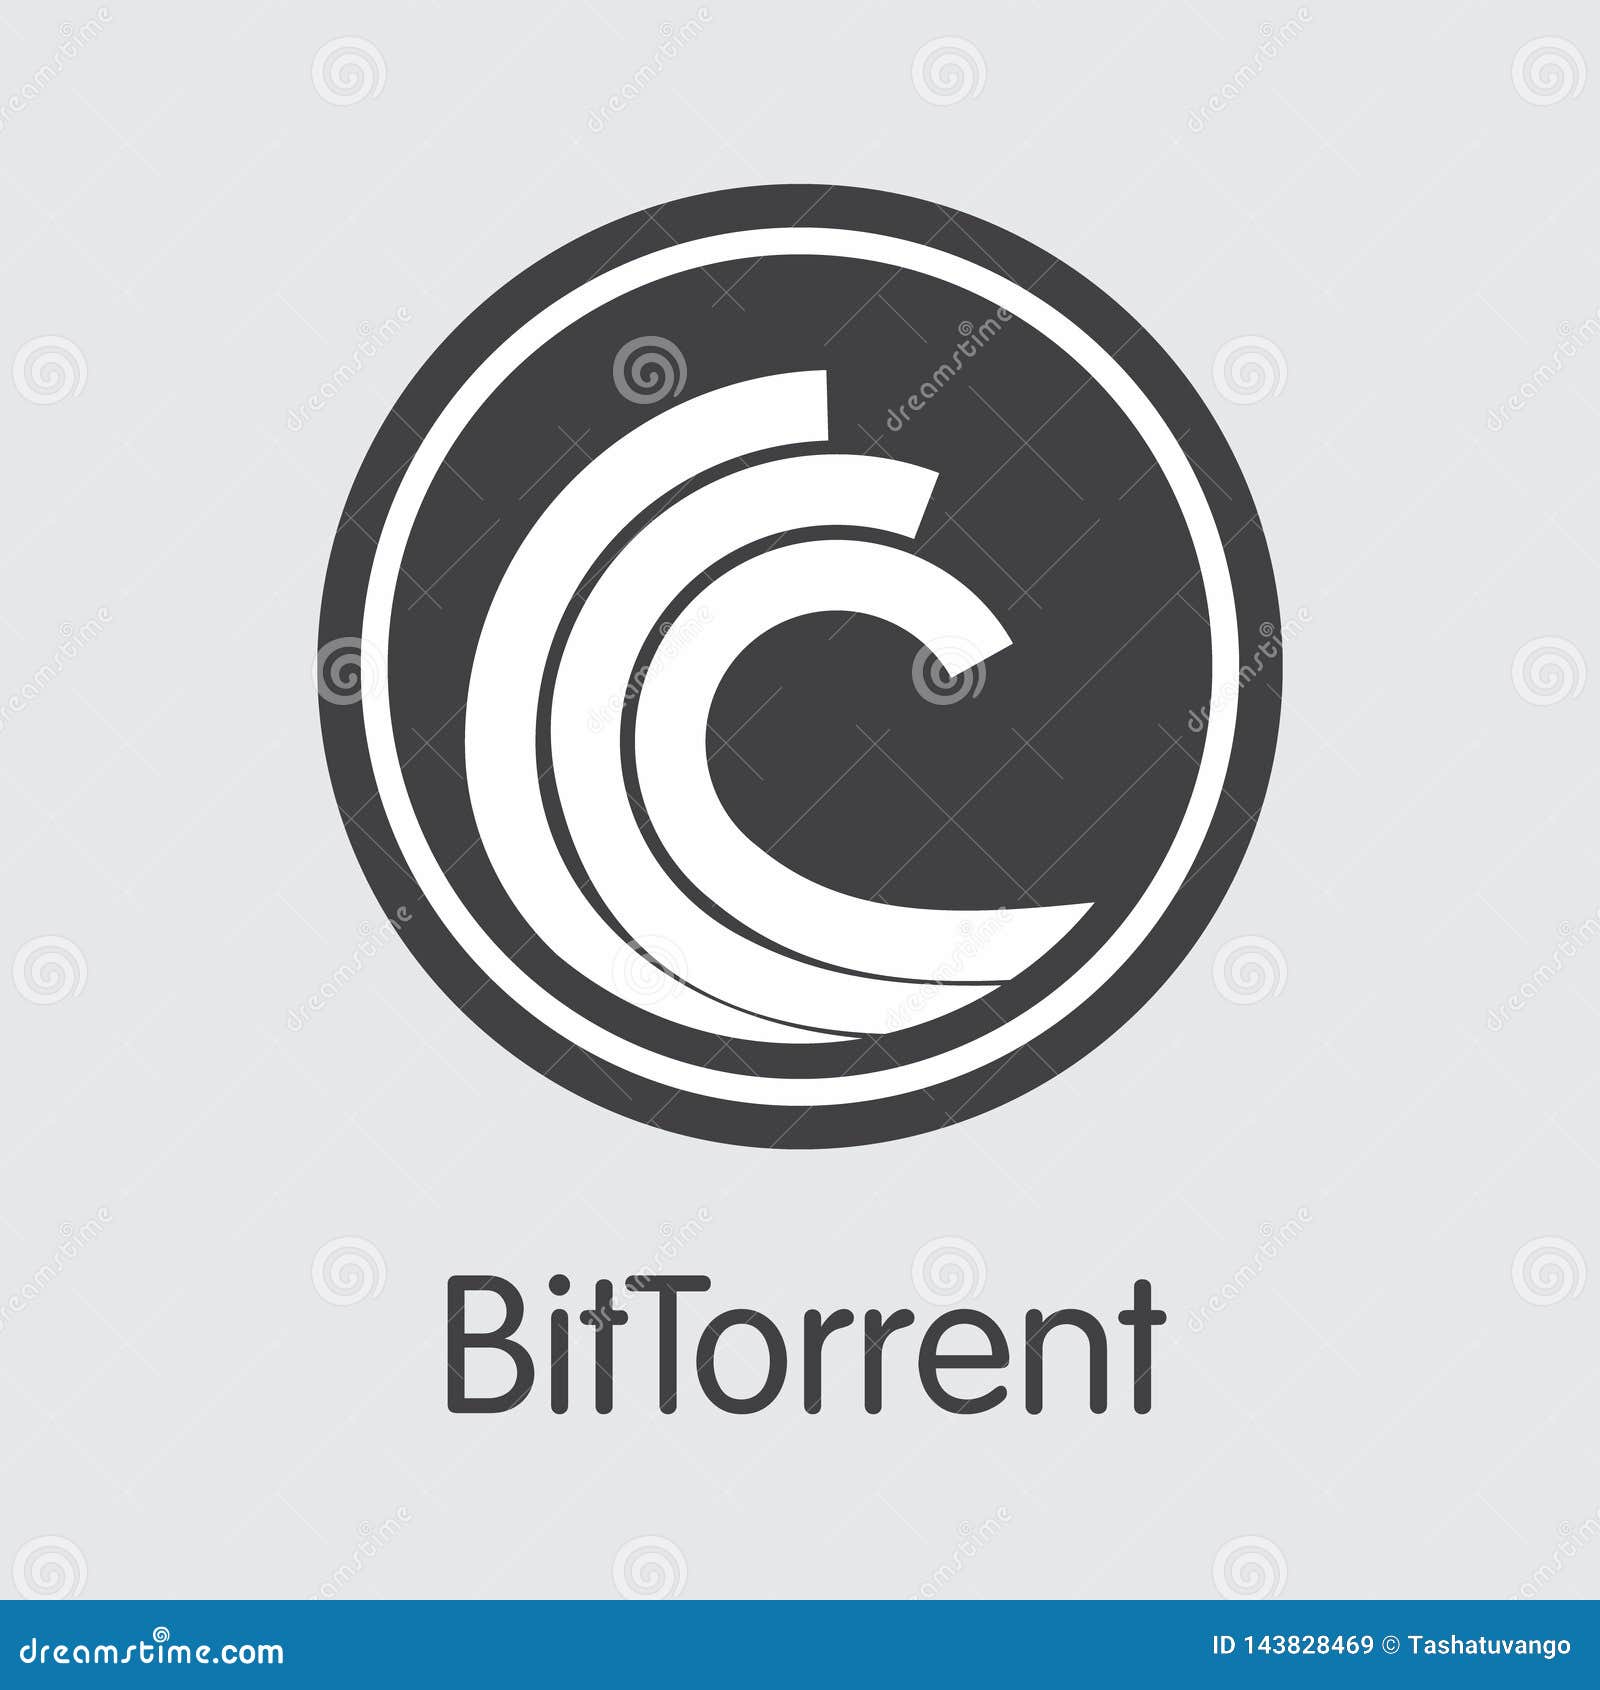 btt - bittorrent. the icon of money or market emblem.